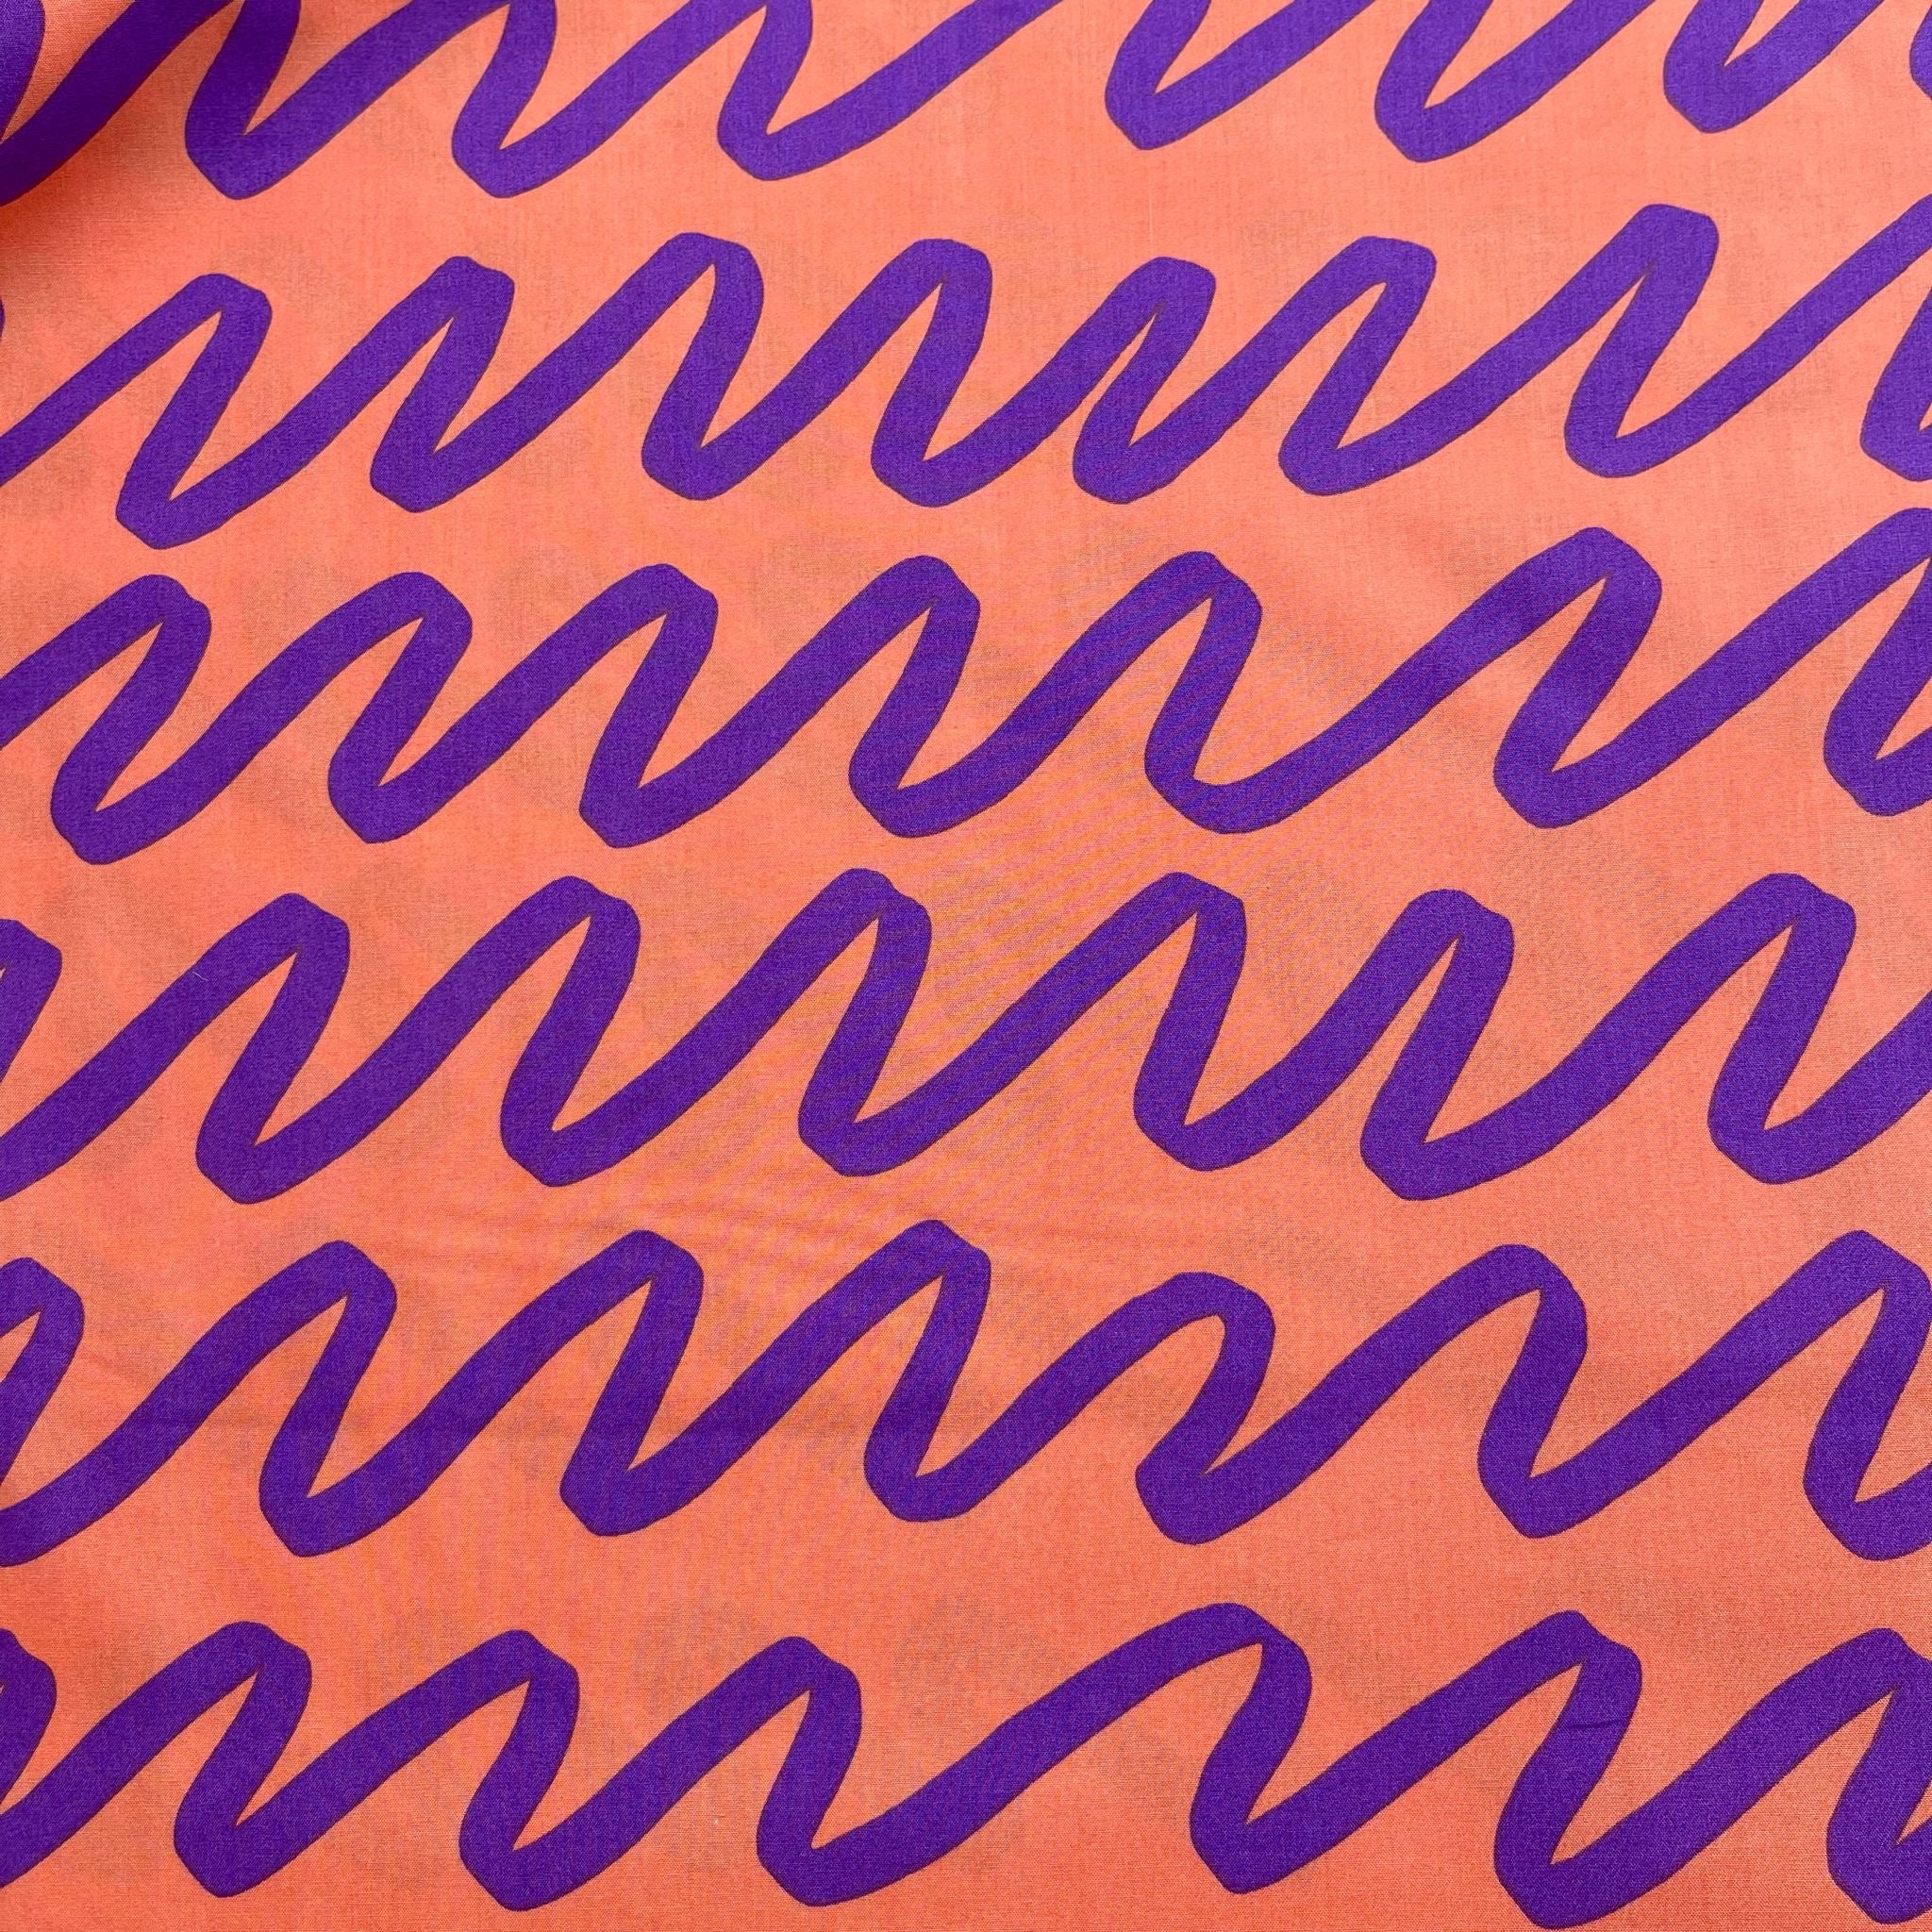 REMNANT 0.64 Metres - Nerida Hansen - Making Waves on Orange Cotton Poplin Fabric